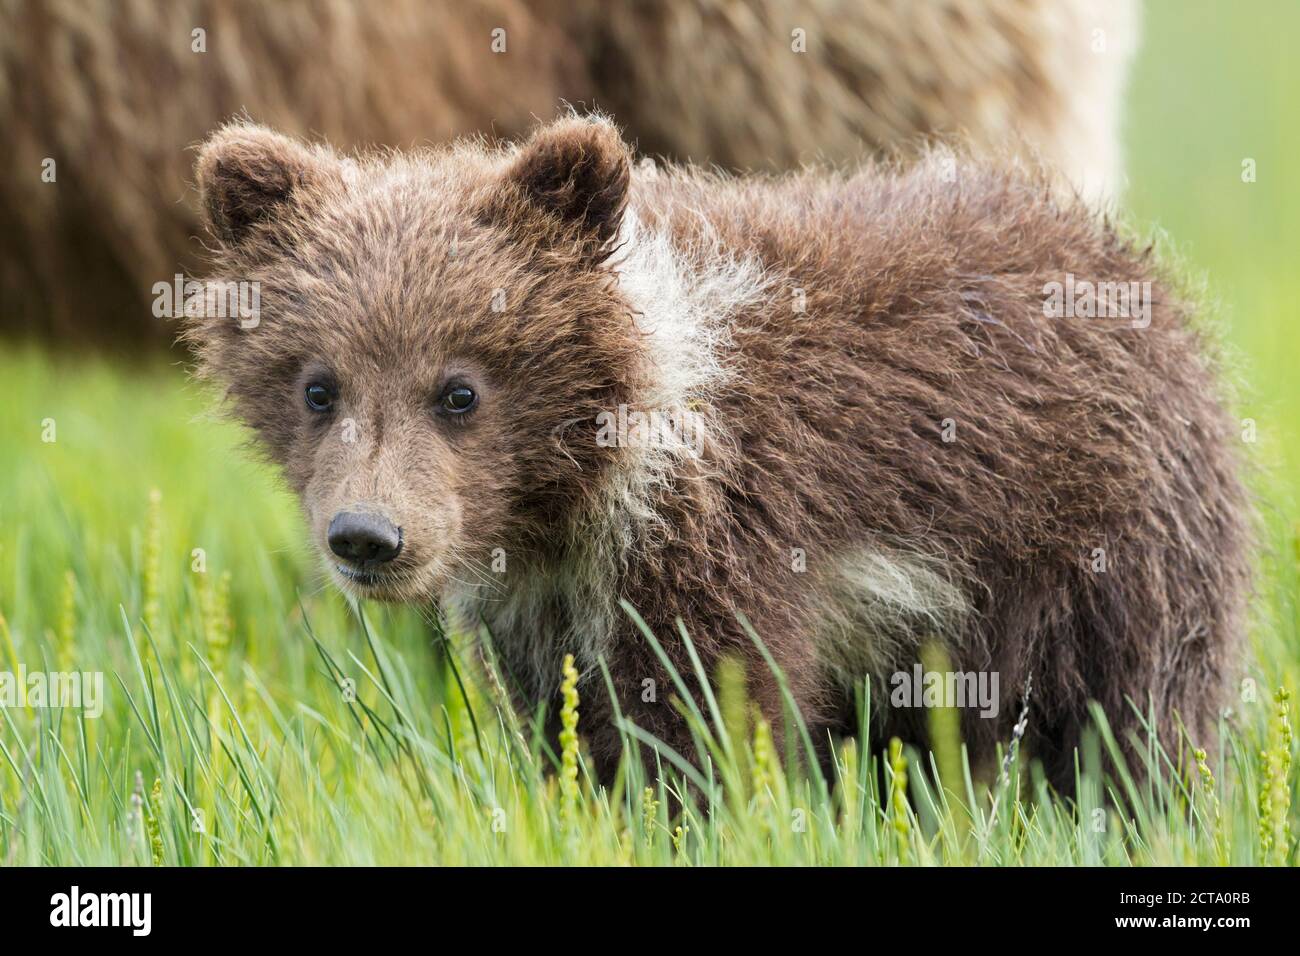 USA, Alaska, Lake Clark National Park and Preserve, Brown bear cub (Ursus arctos) Stock Photo